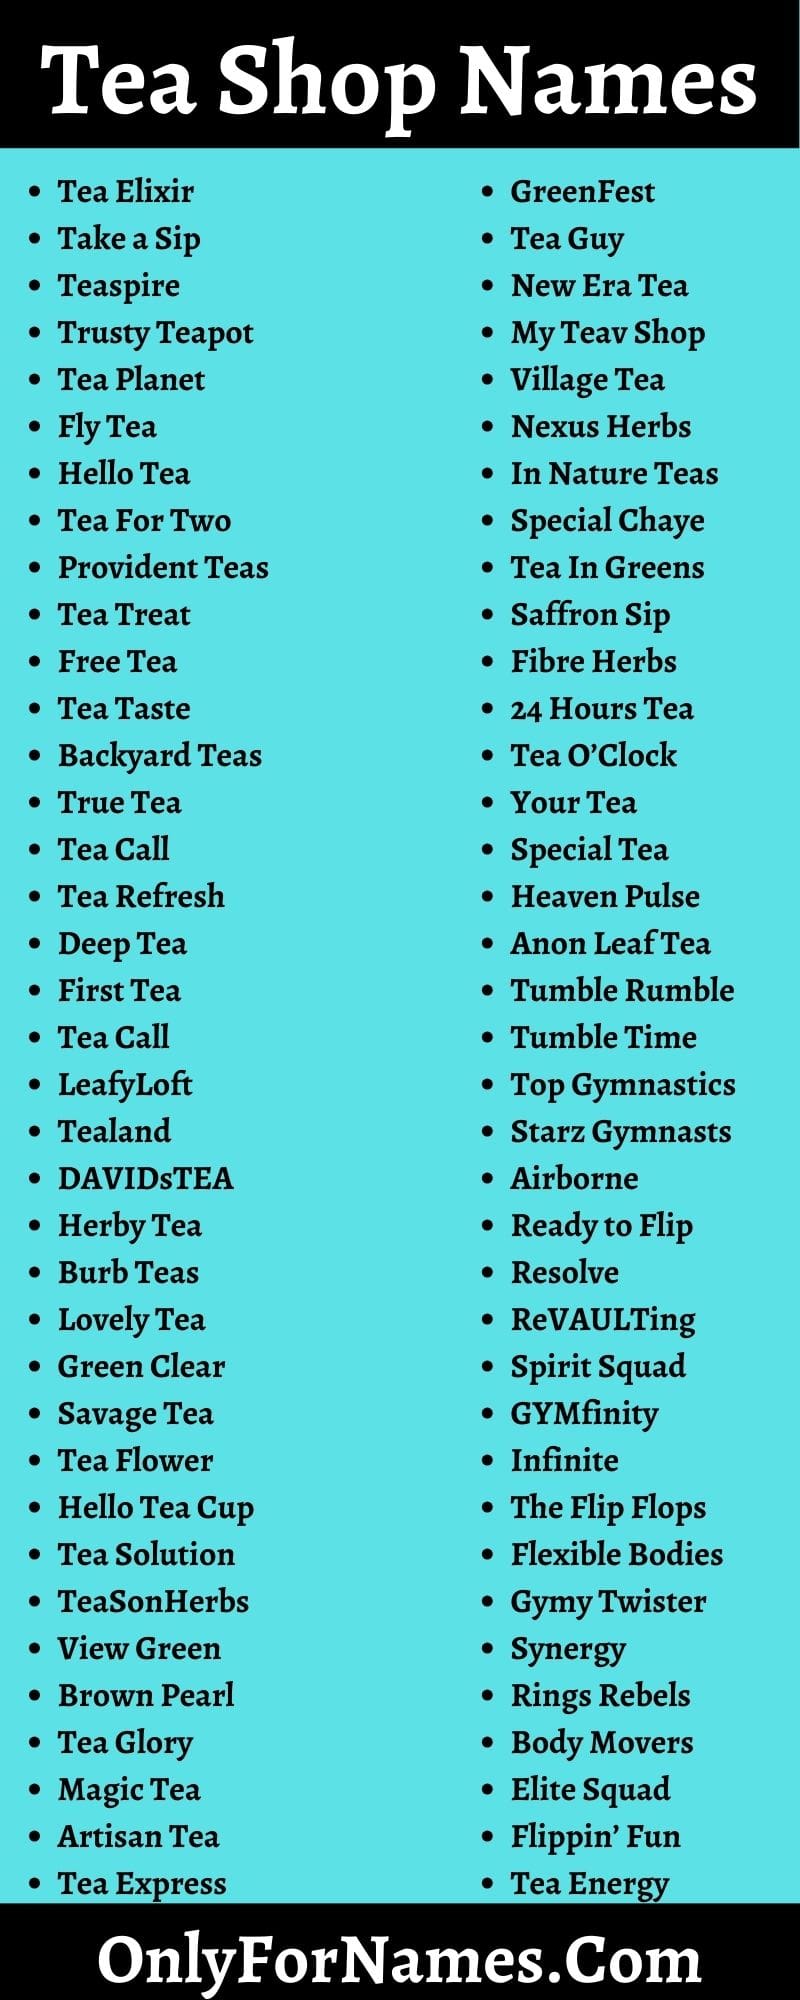 Tea Shop Names